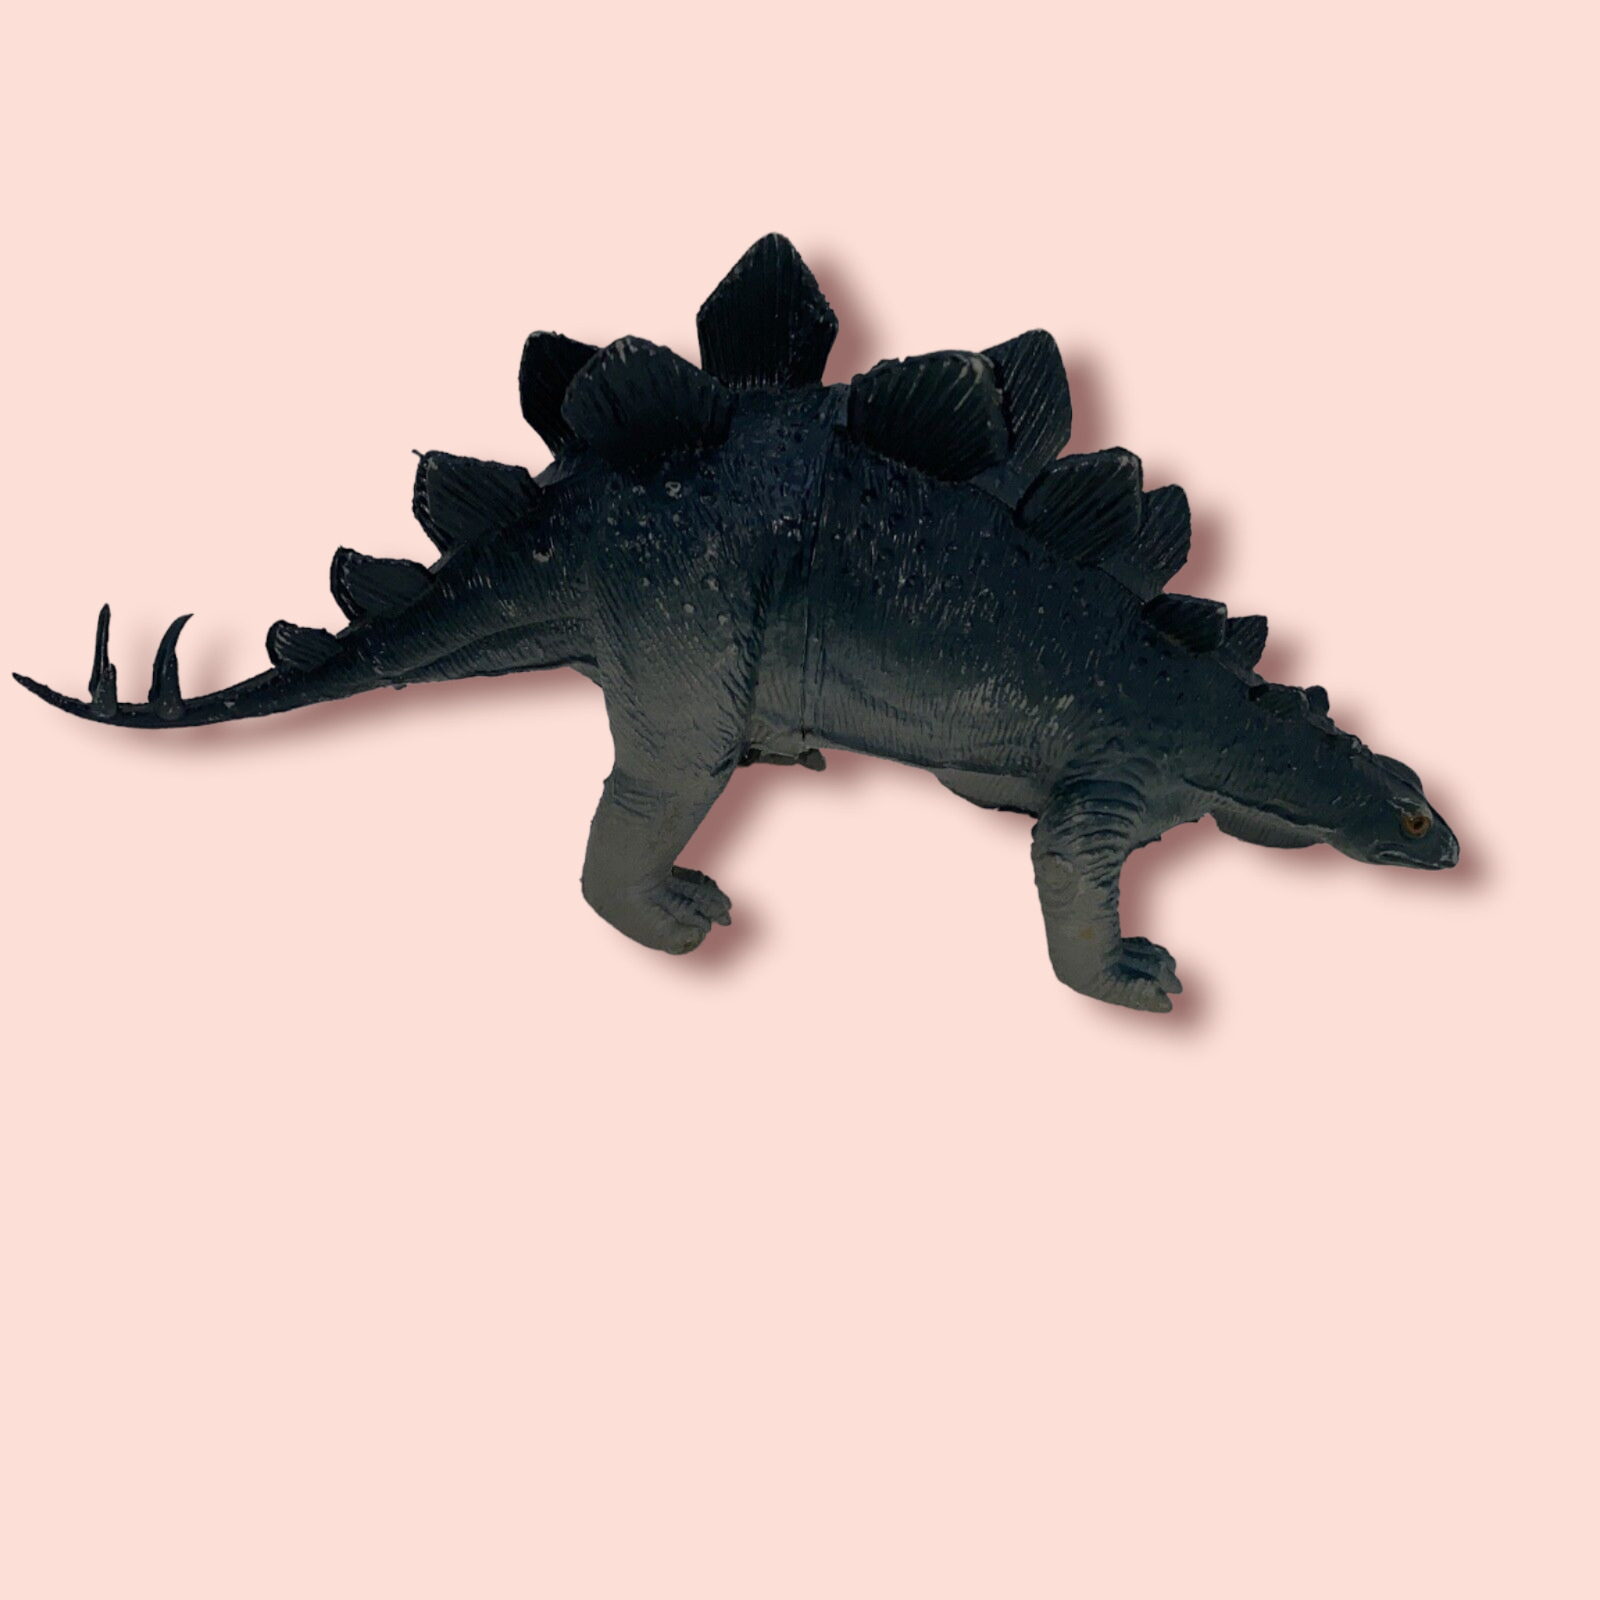 Vintage Imperial 1985 Stegosaurus Plastic 10" Dinosaur Toy